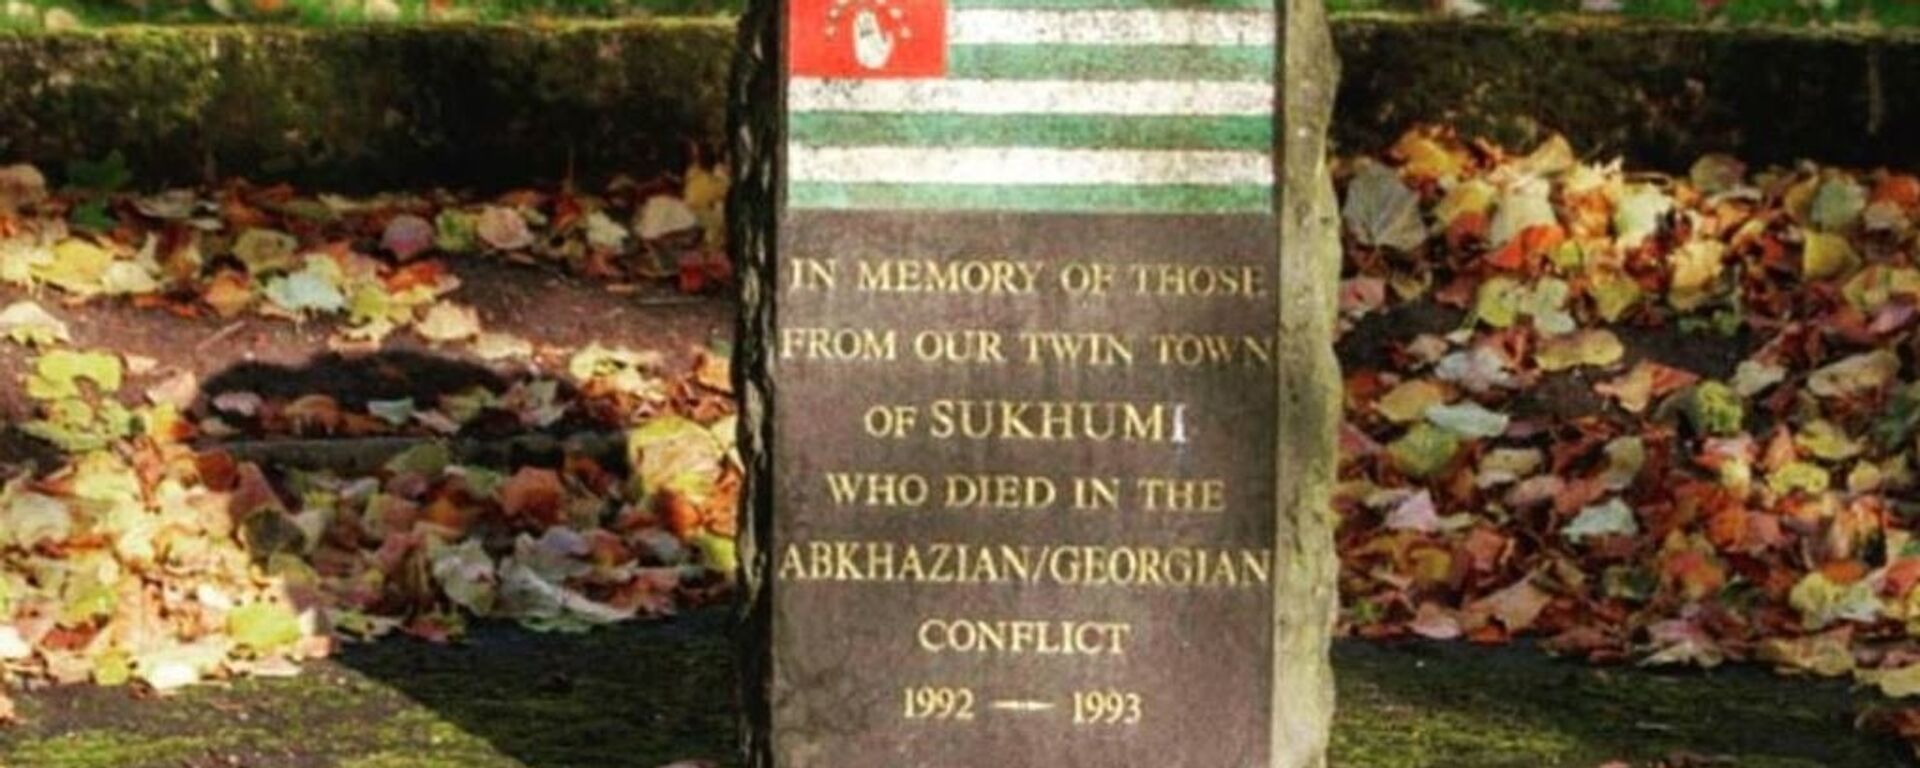 Мемориал в шотландском городе Килмарнок, установленный в память об абхазских воинах, погибших в результате агрессии Грузии в 1992-1993 годах - Sputnik Абхазия, 1920, 26.12.2017